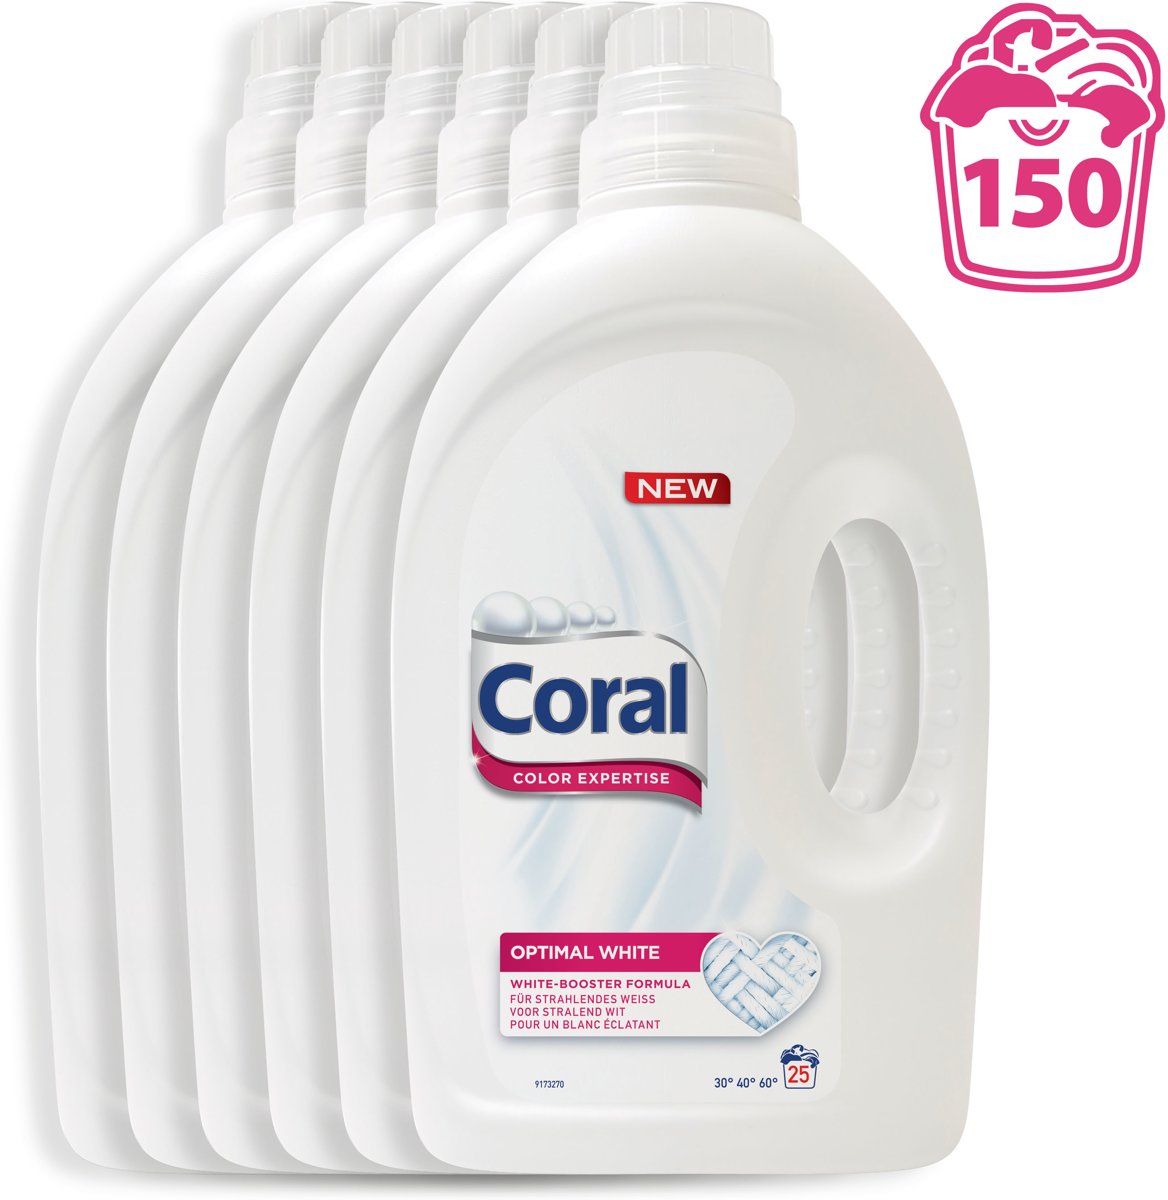 Foto van Coral Optimal White - 150 wasbeurten - 6 x 1,4 l - Wasmiddel - Kwartaalbox